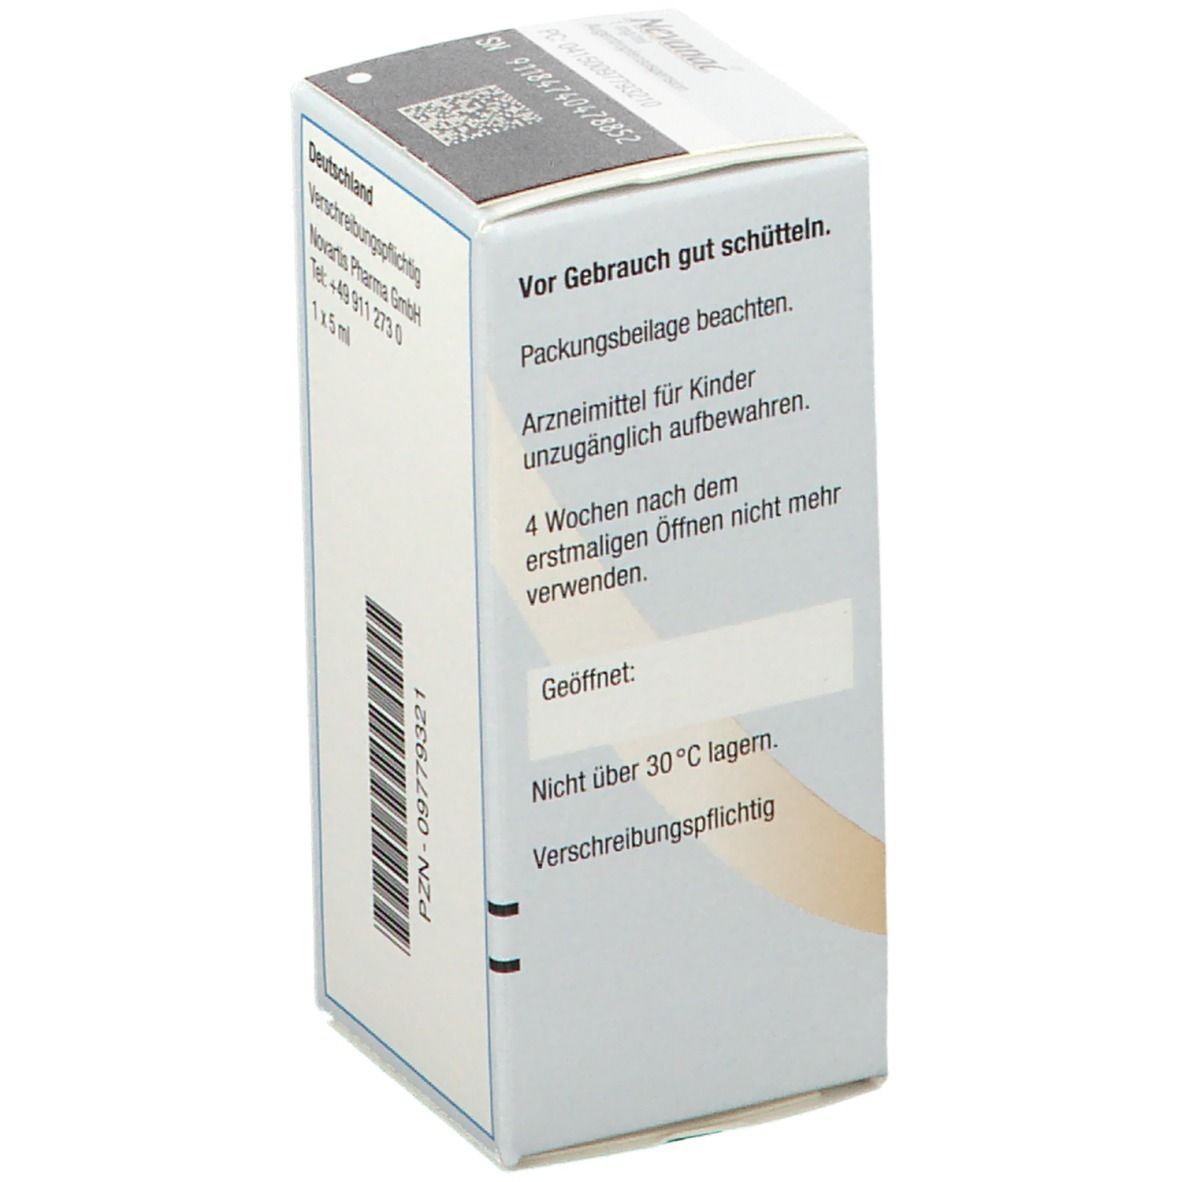 Nevanac® 1 mg/ml